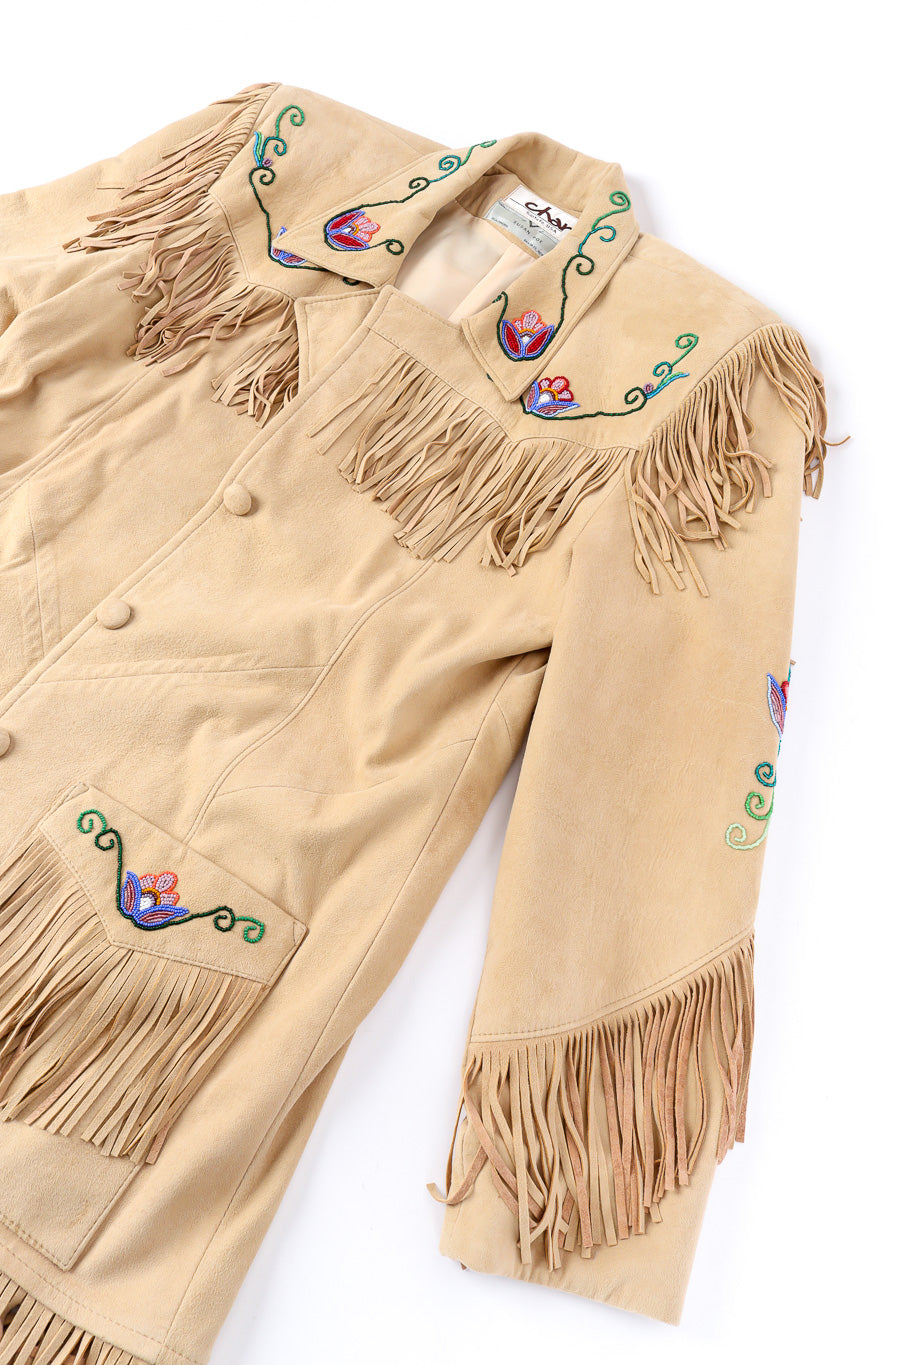 Vintage Char suede fringe jacket front view @Recessla